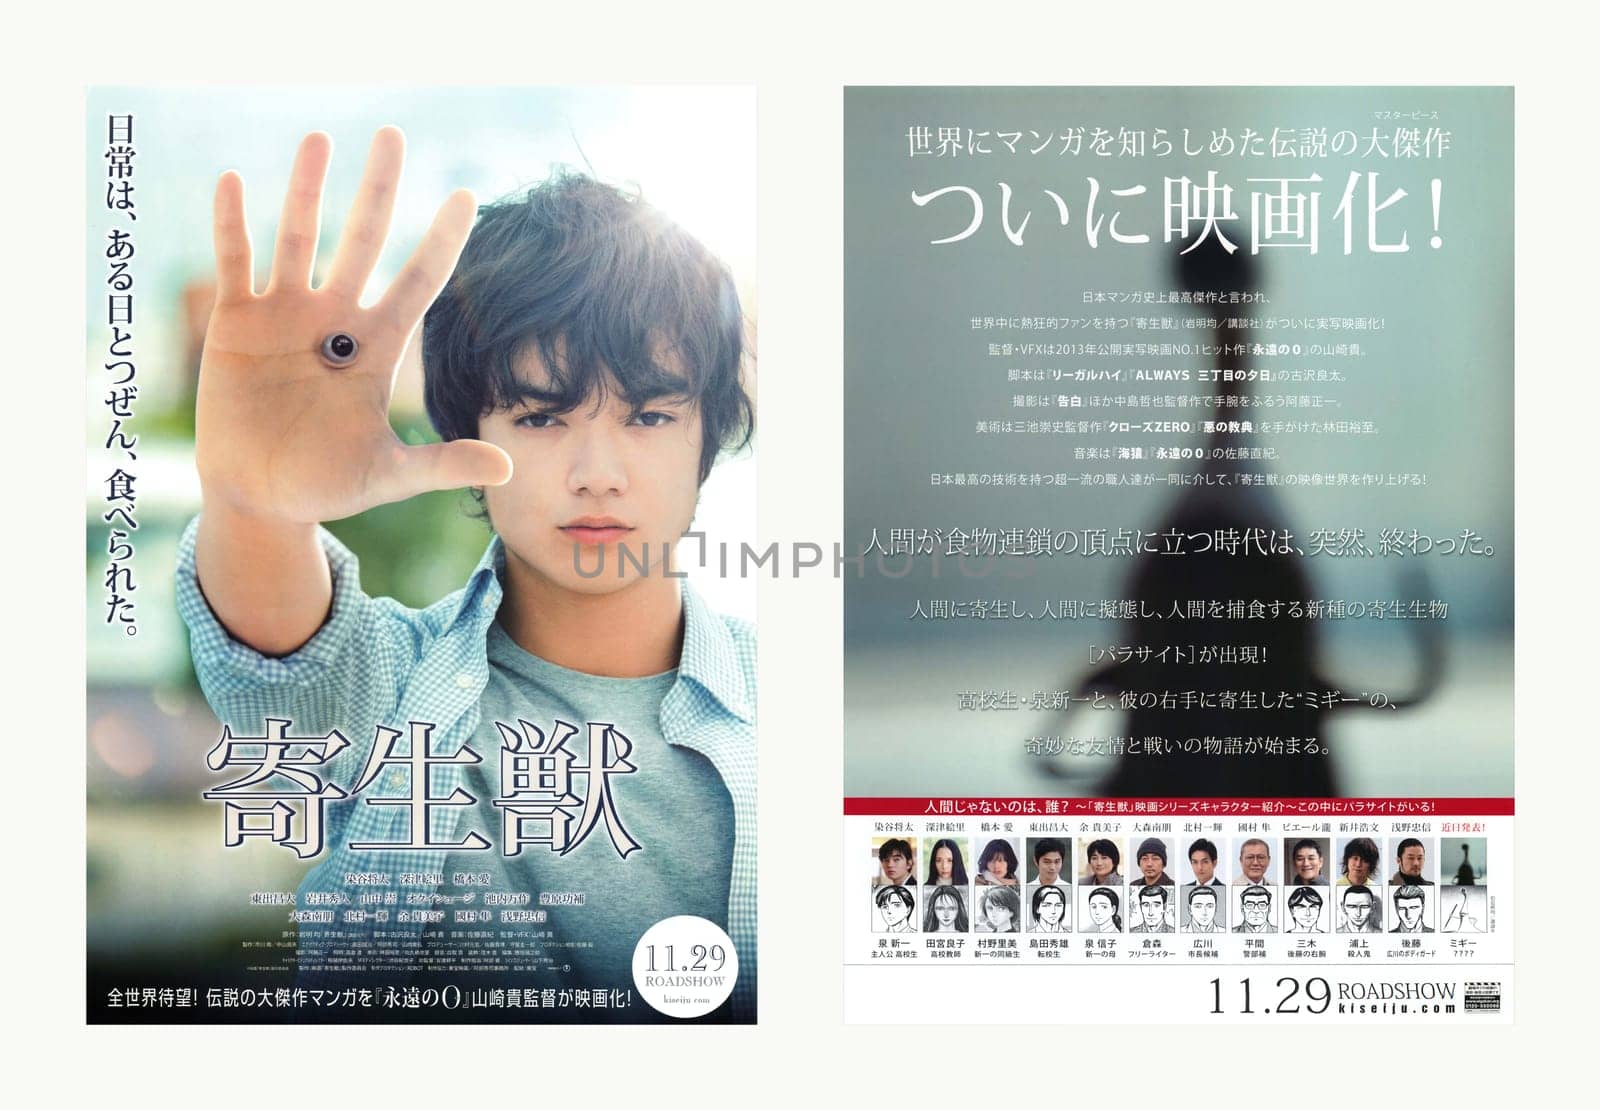 1st teaser visual leaflet of the Japanese manga based movie "Parasyte" by Takashi Yamazaki. by kuremo